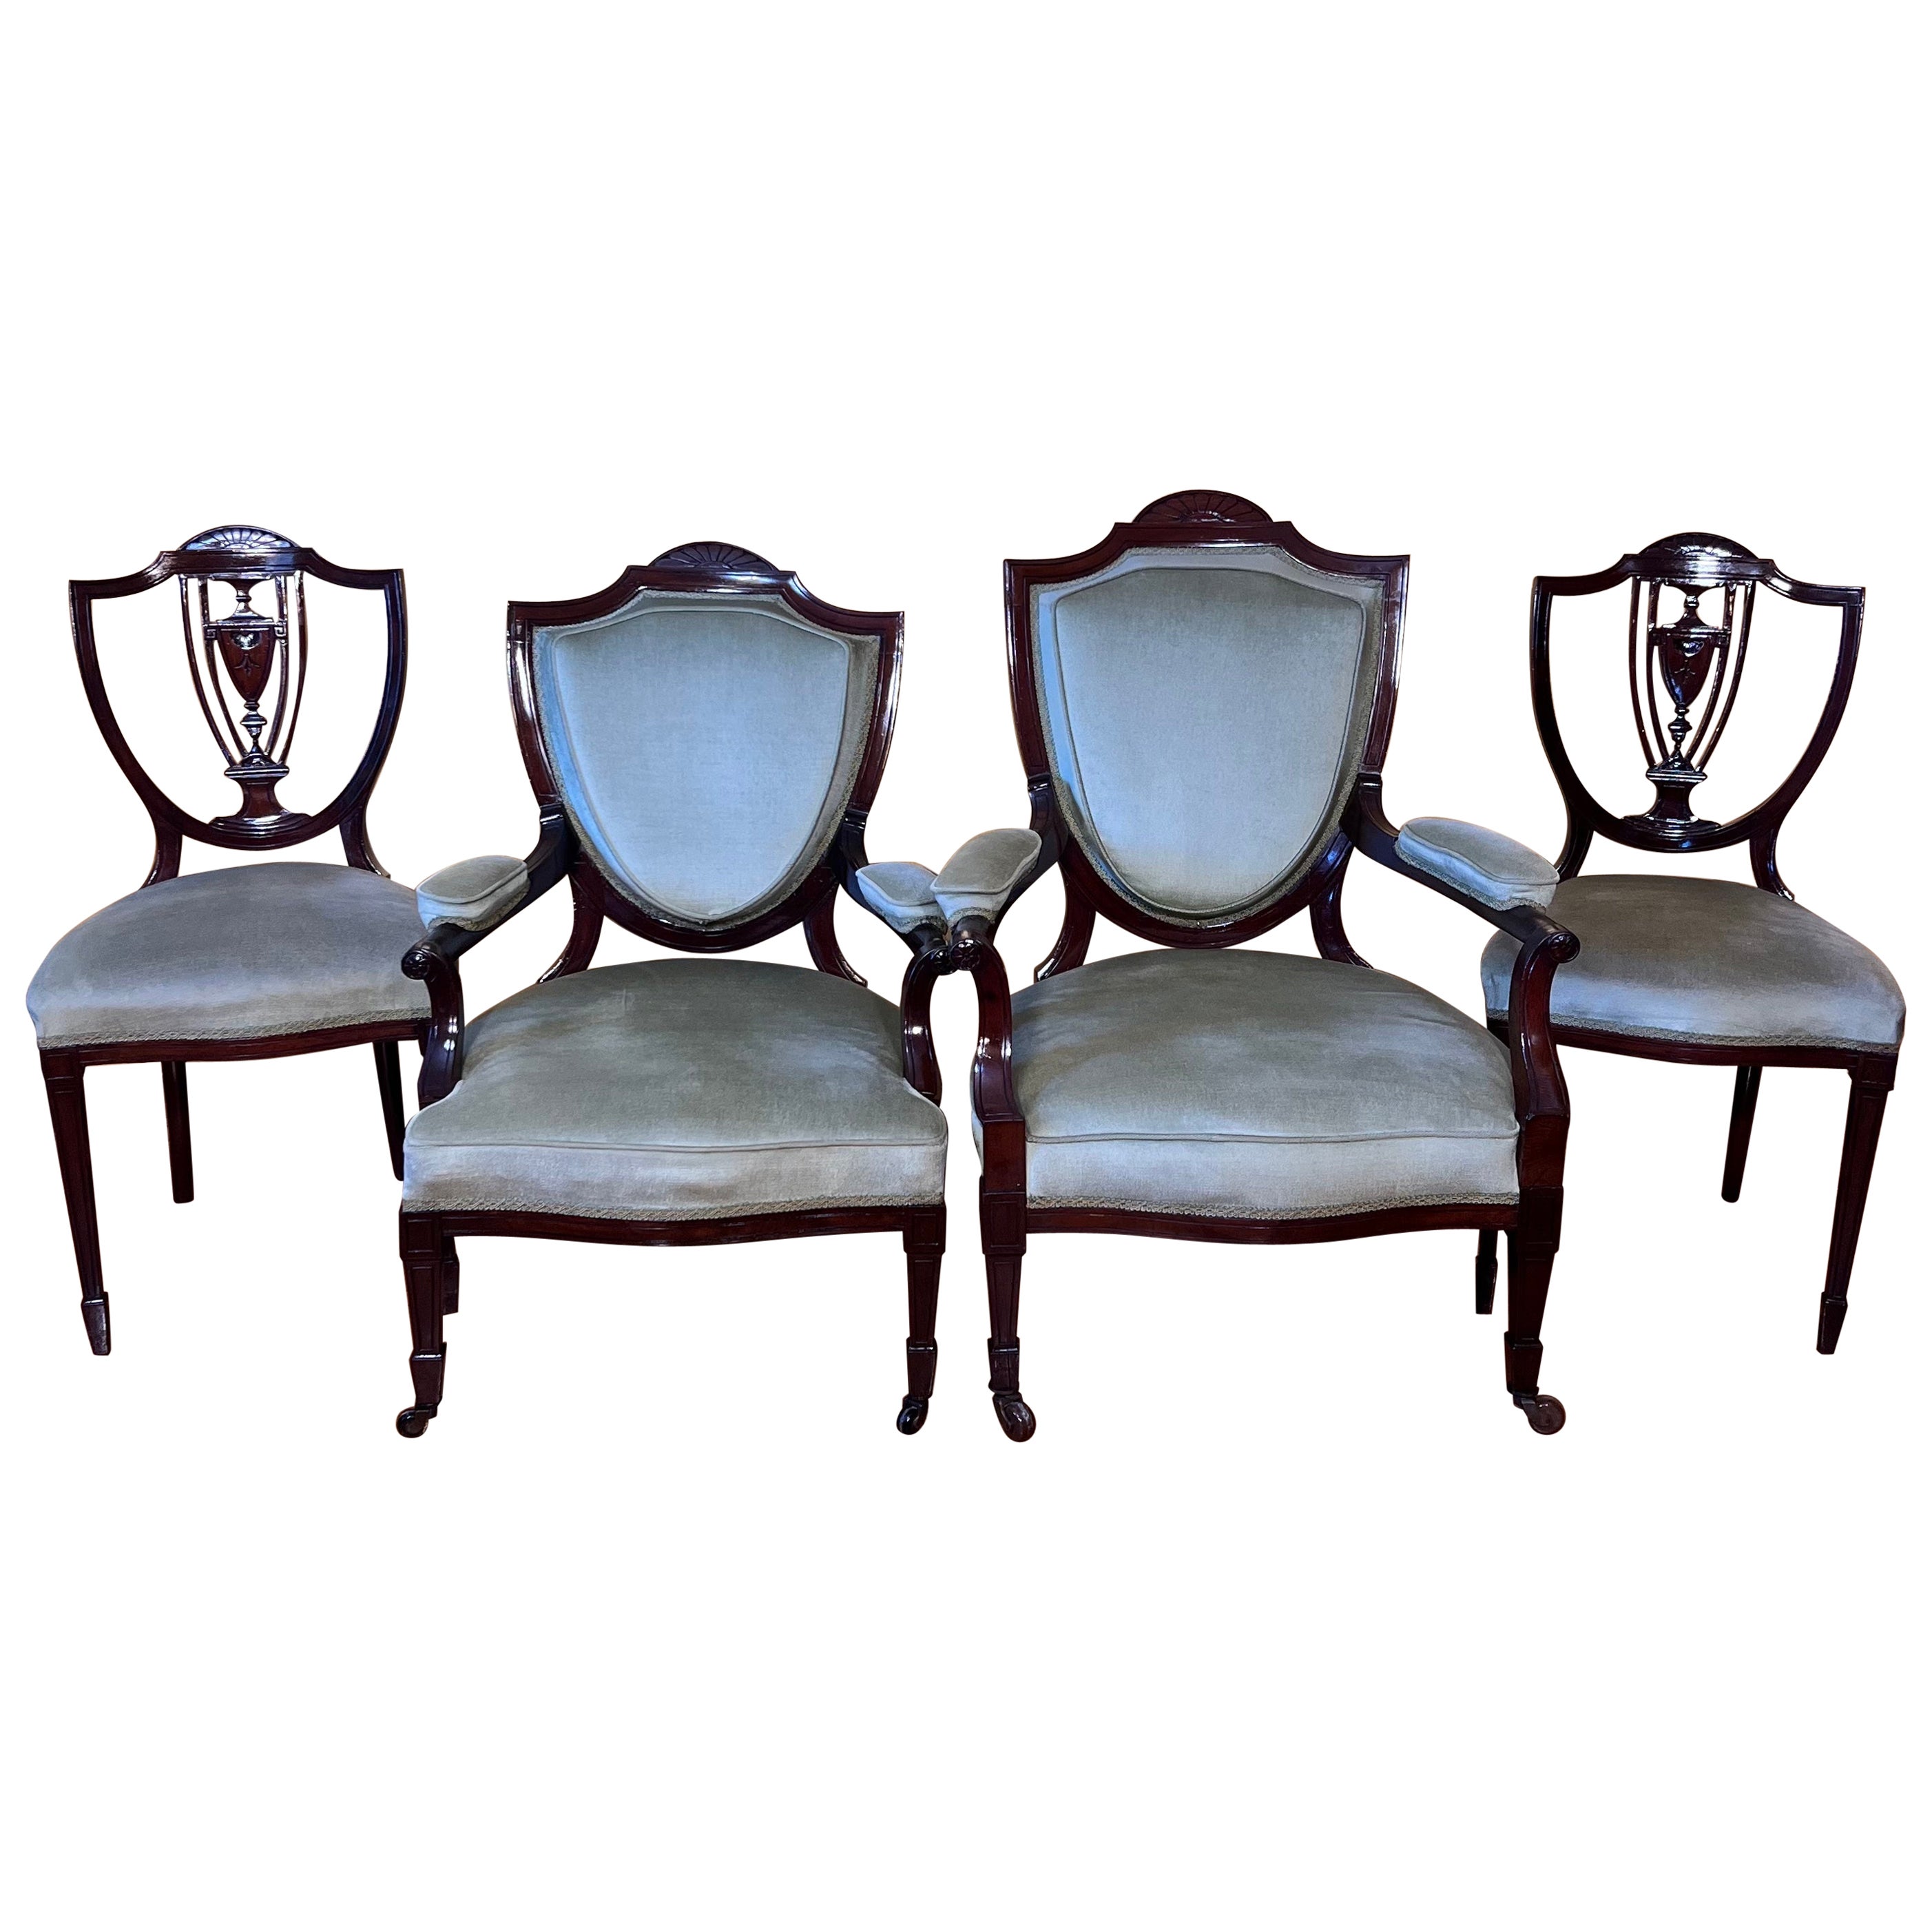 Ensemble de quatre chaises anciennes en noyer du début du 20e siècle